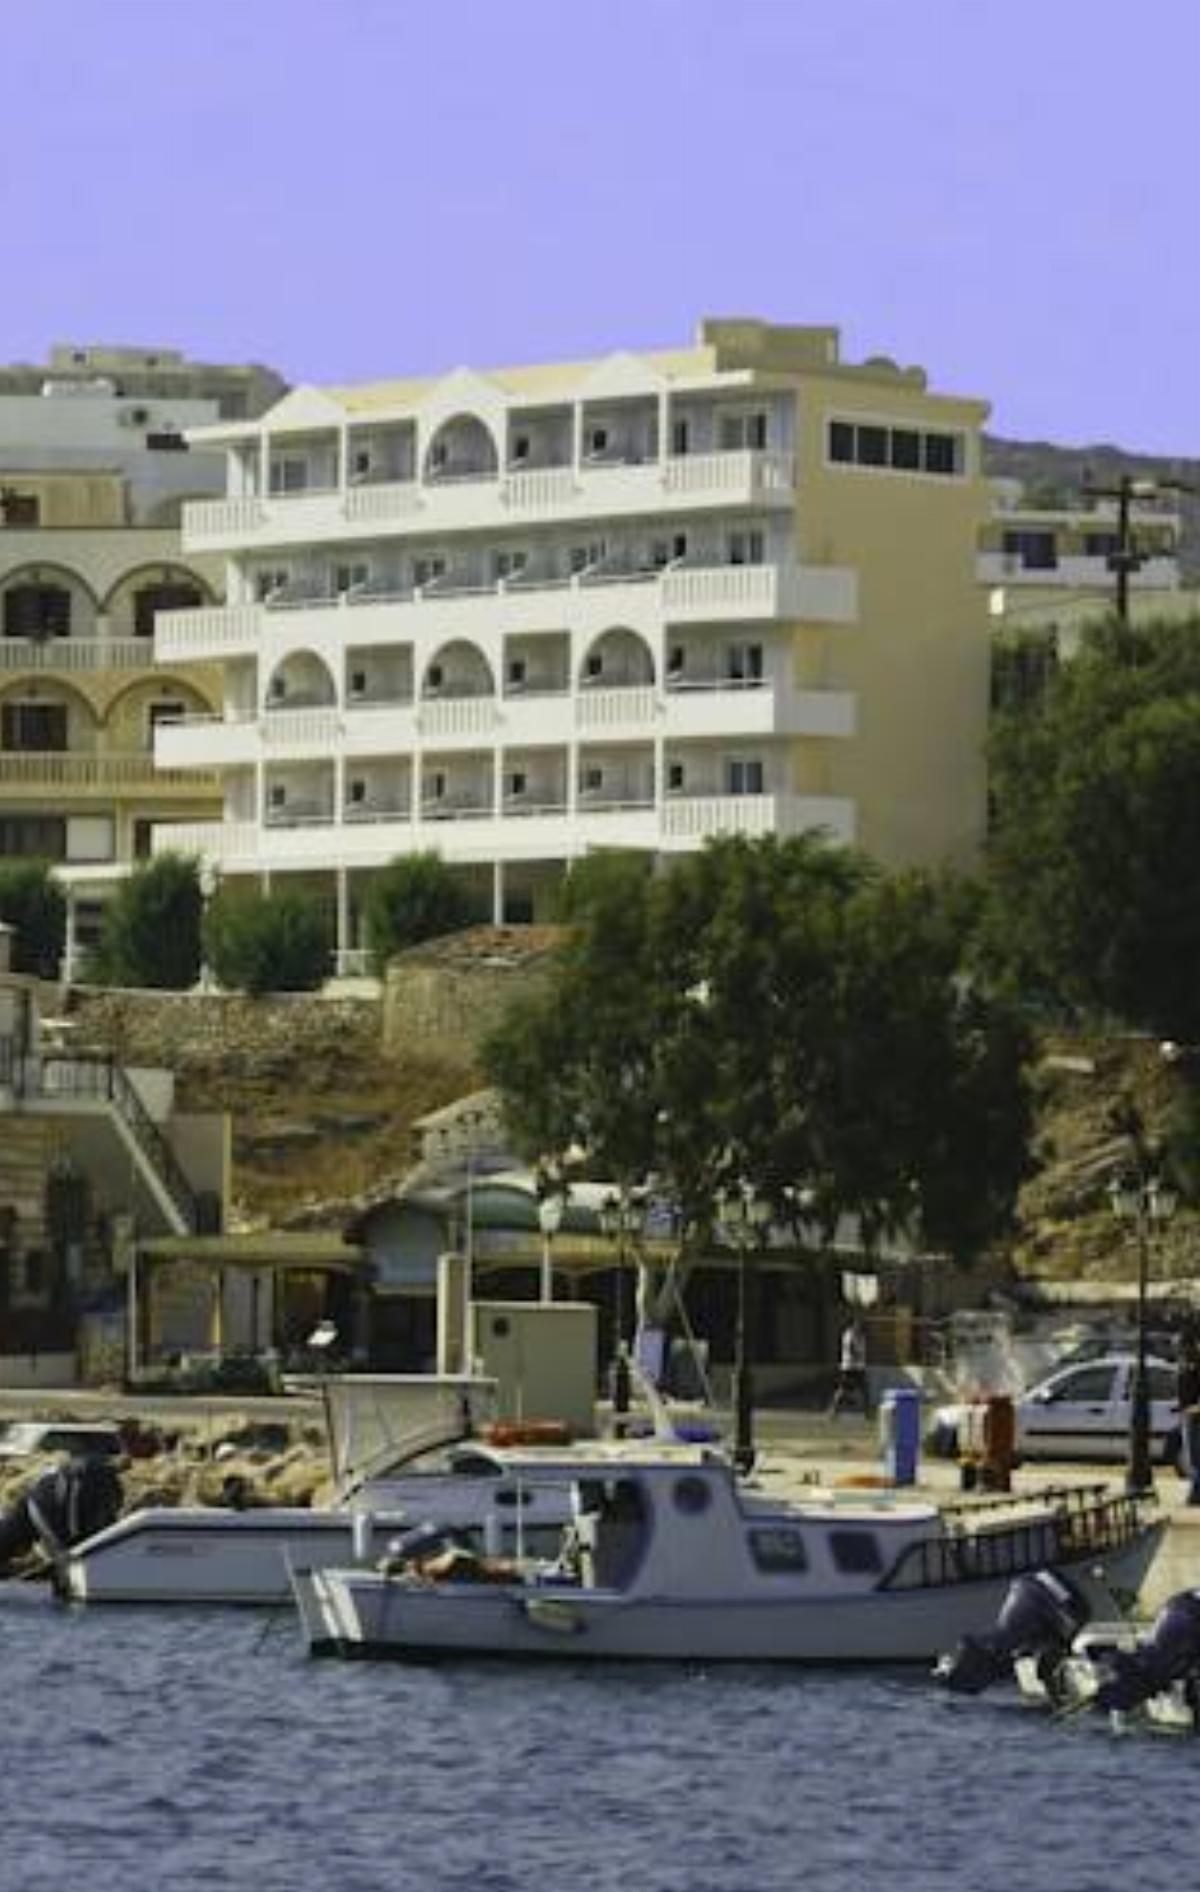 Sunrise Hotel Hotel Kárpathos Greece